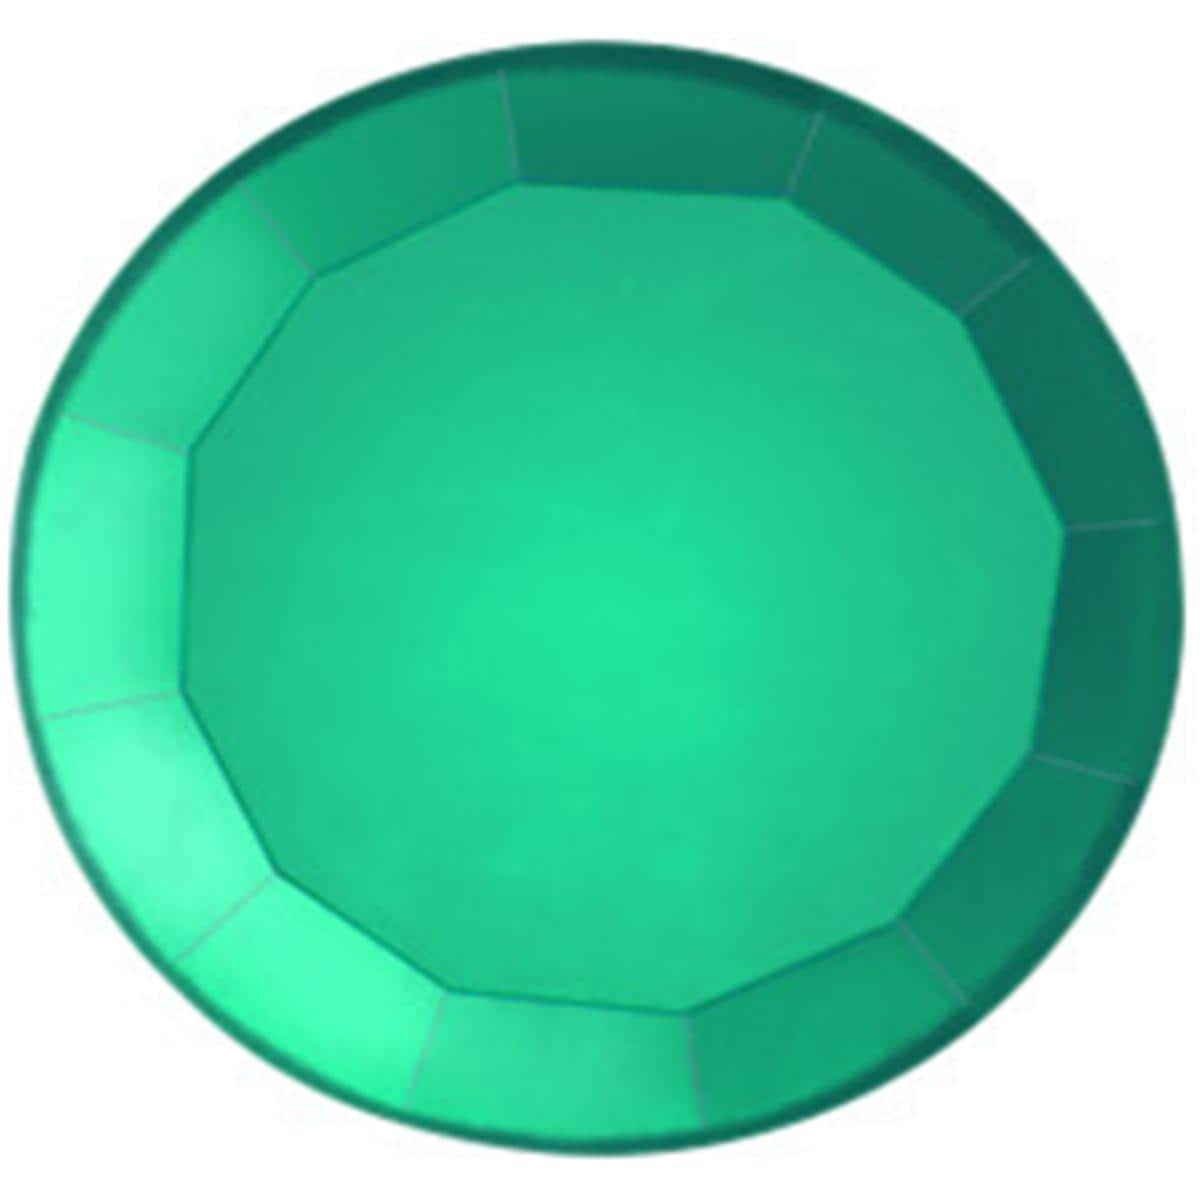 Prodental® Jewels, Ø 2,0 mm - Grün / Emerland, Packung 5 Stück